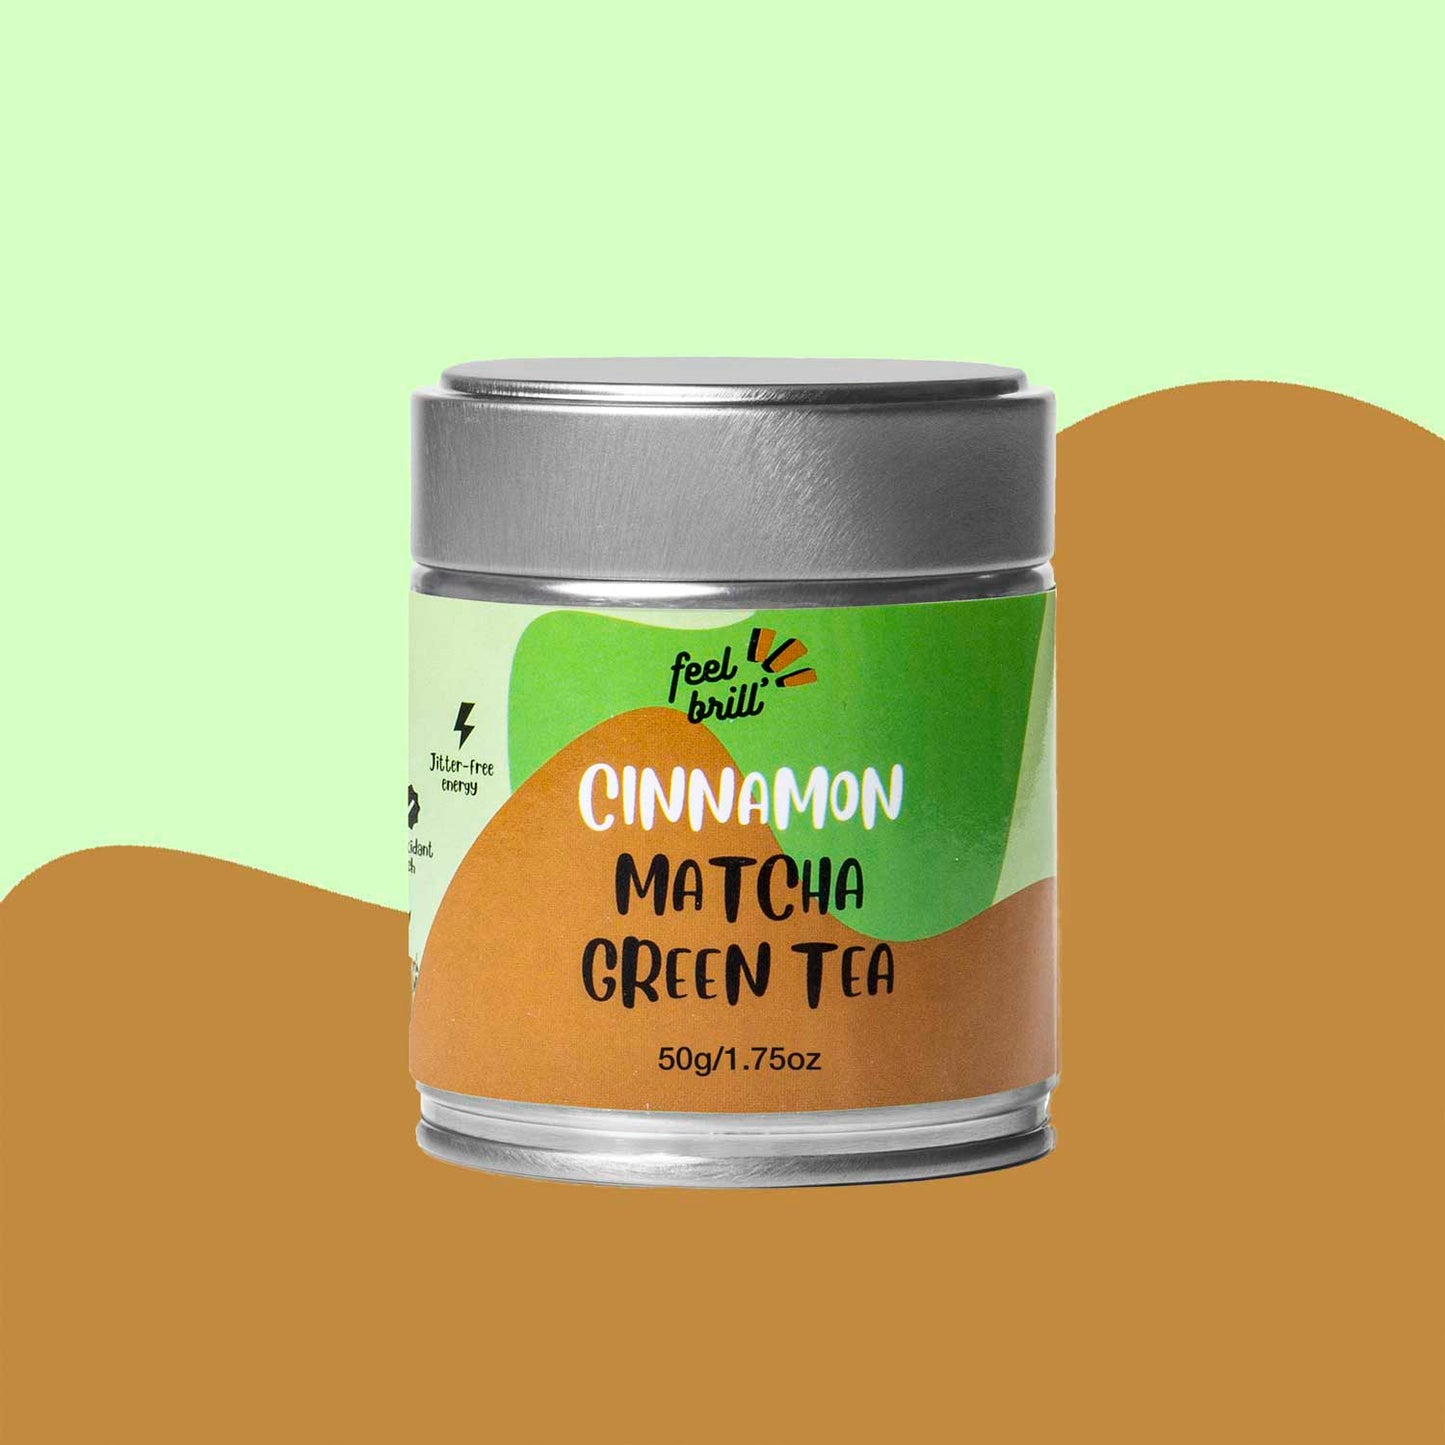 Matcha arbata su cinamonu - matcha with cinnamon - feel brill